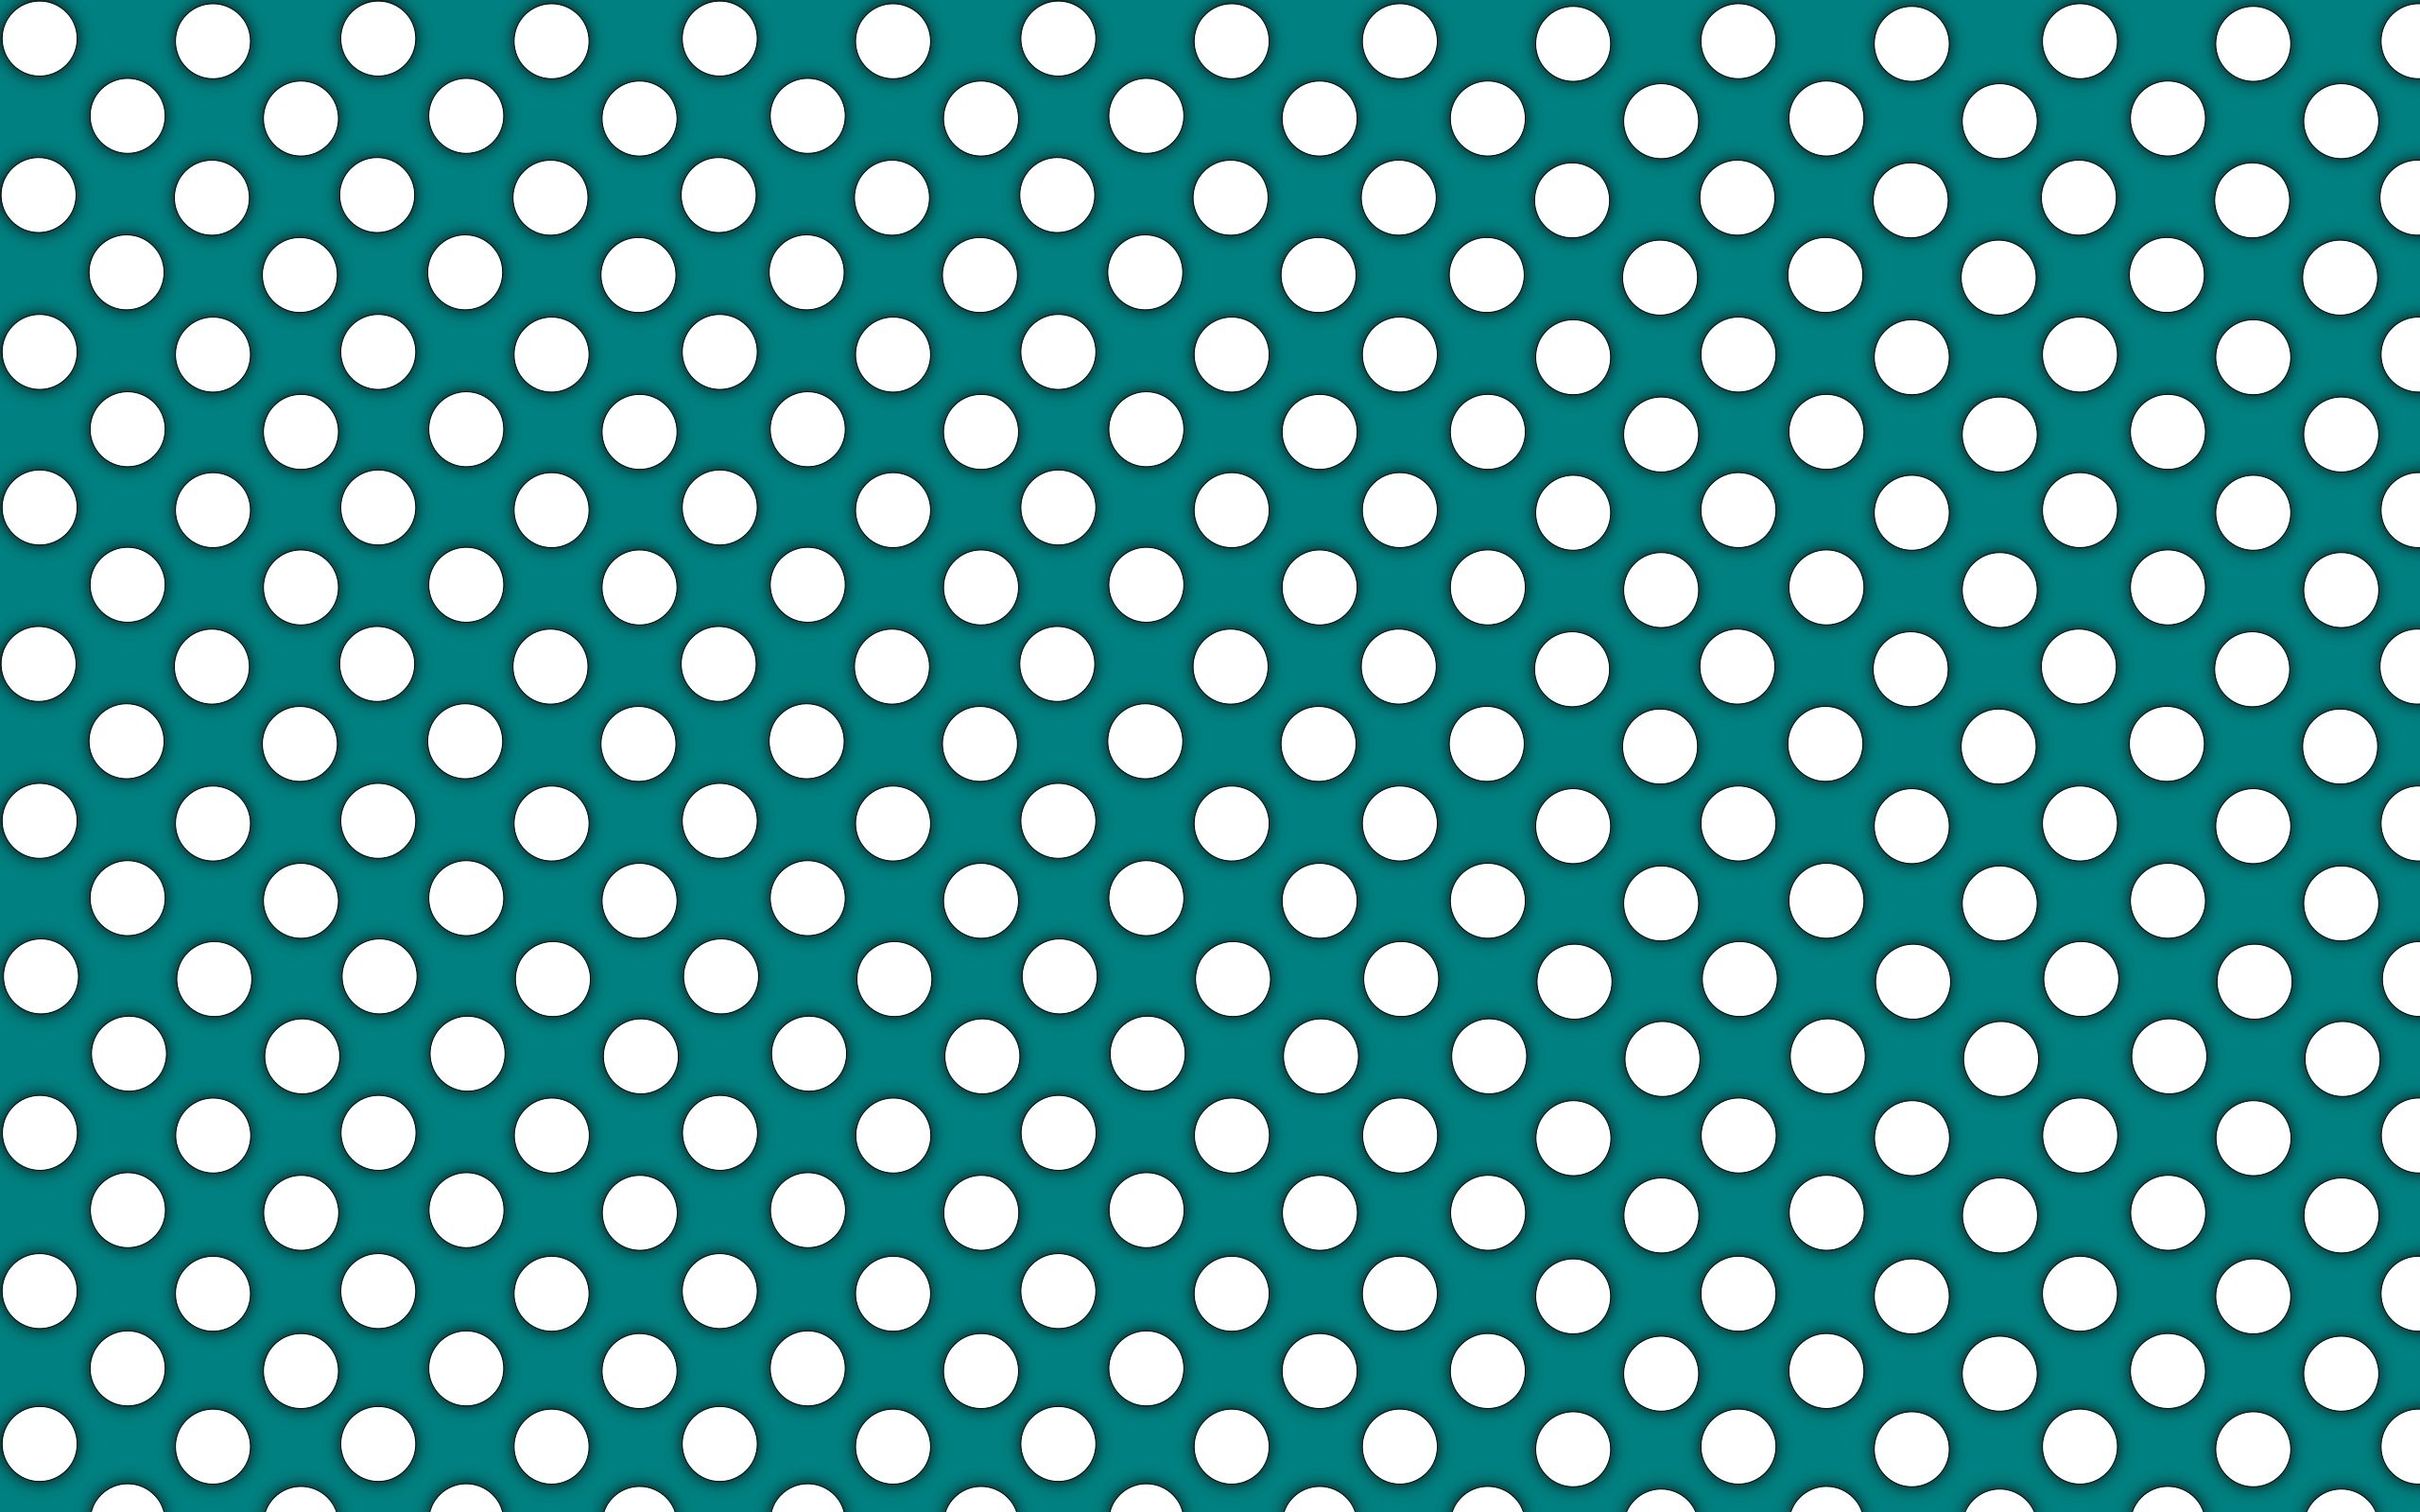 2560x1600 Dots Wallpaper 1 - 2560 X 1600